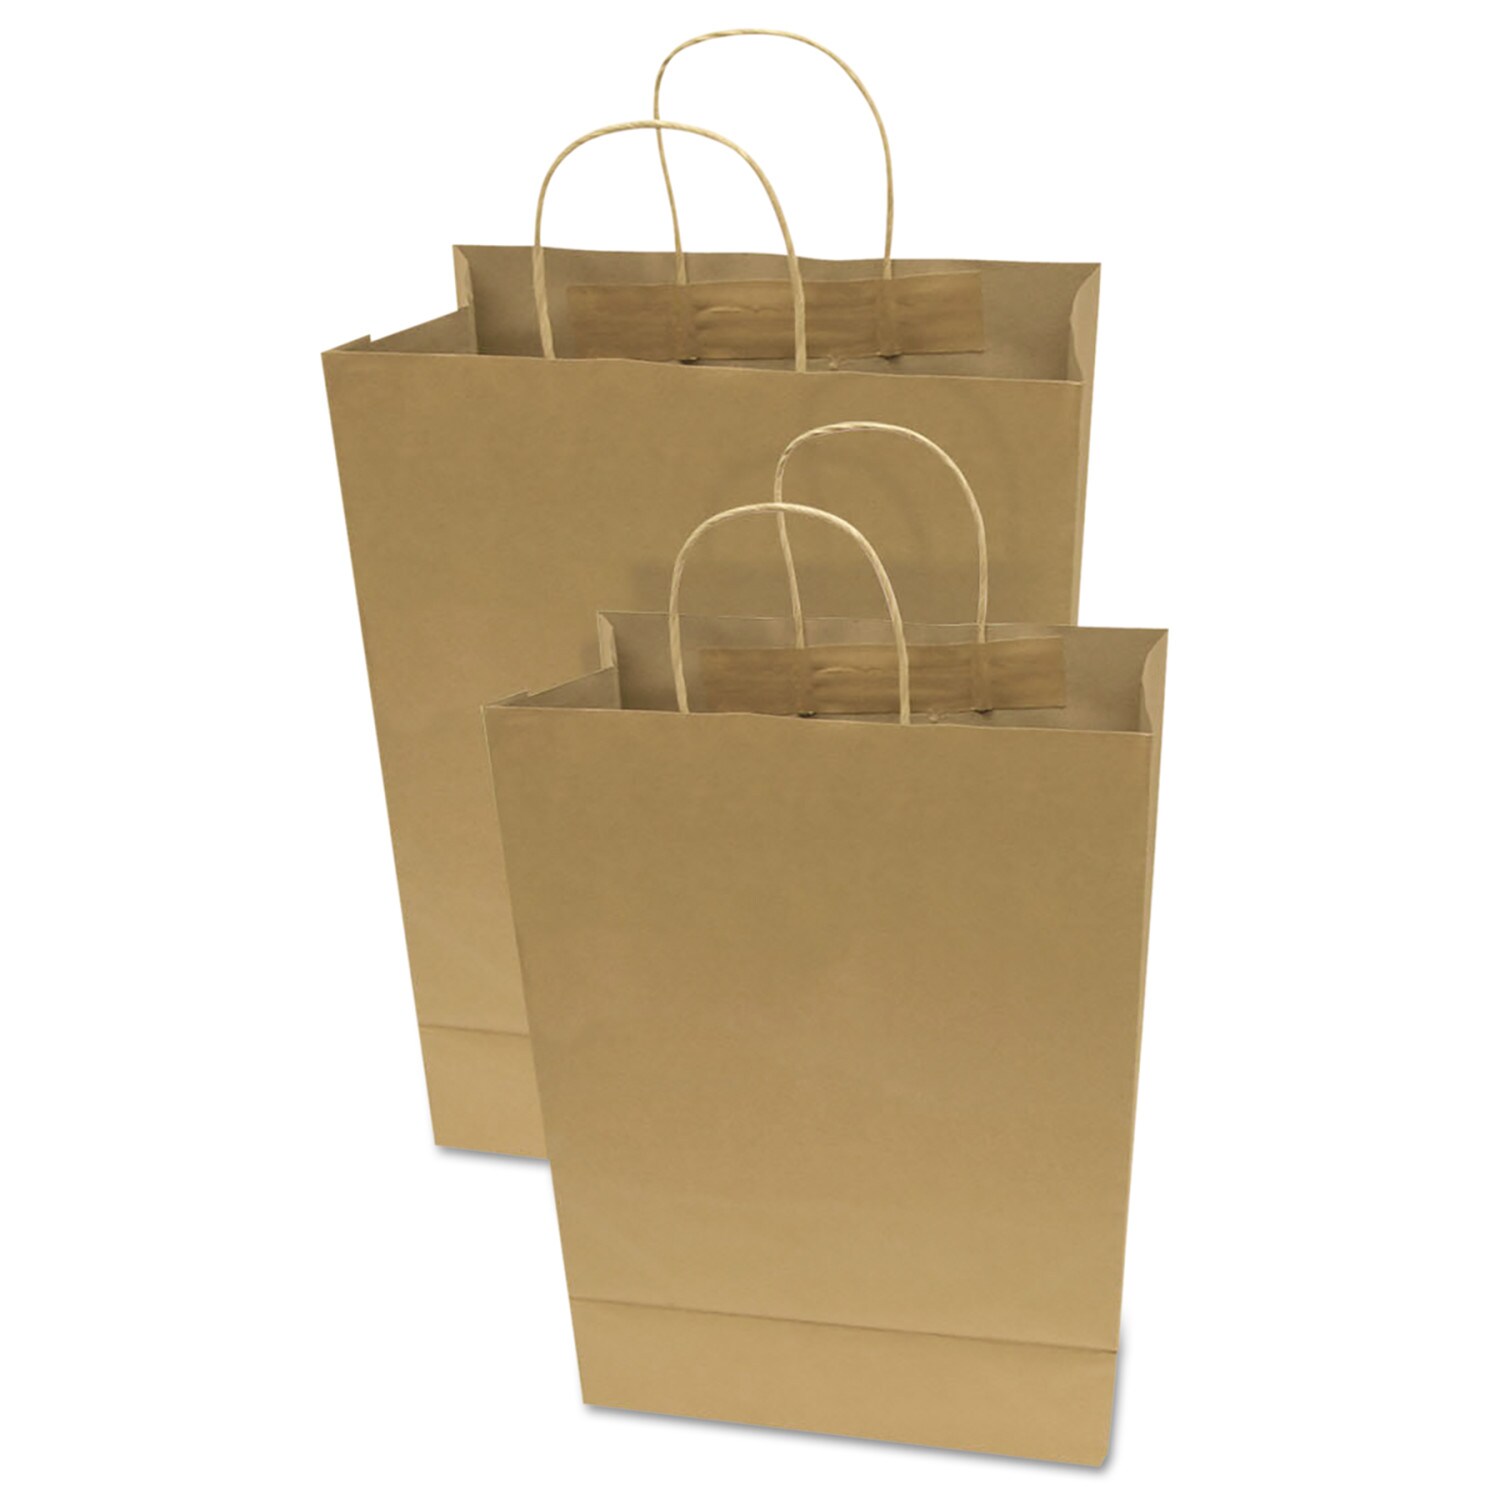 KUSTFYR Shopping bag, large, orange, 21 ¾x13 ¾x14 ½/19 gallon - IKEA